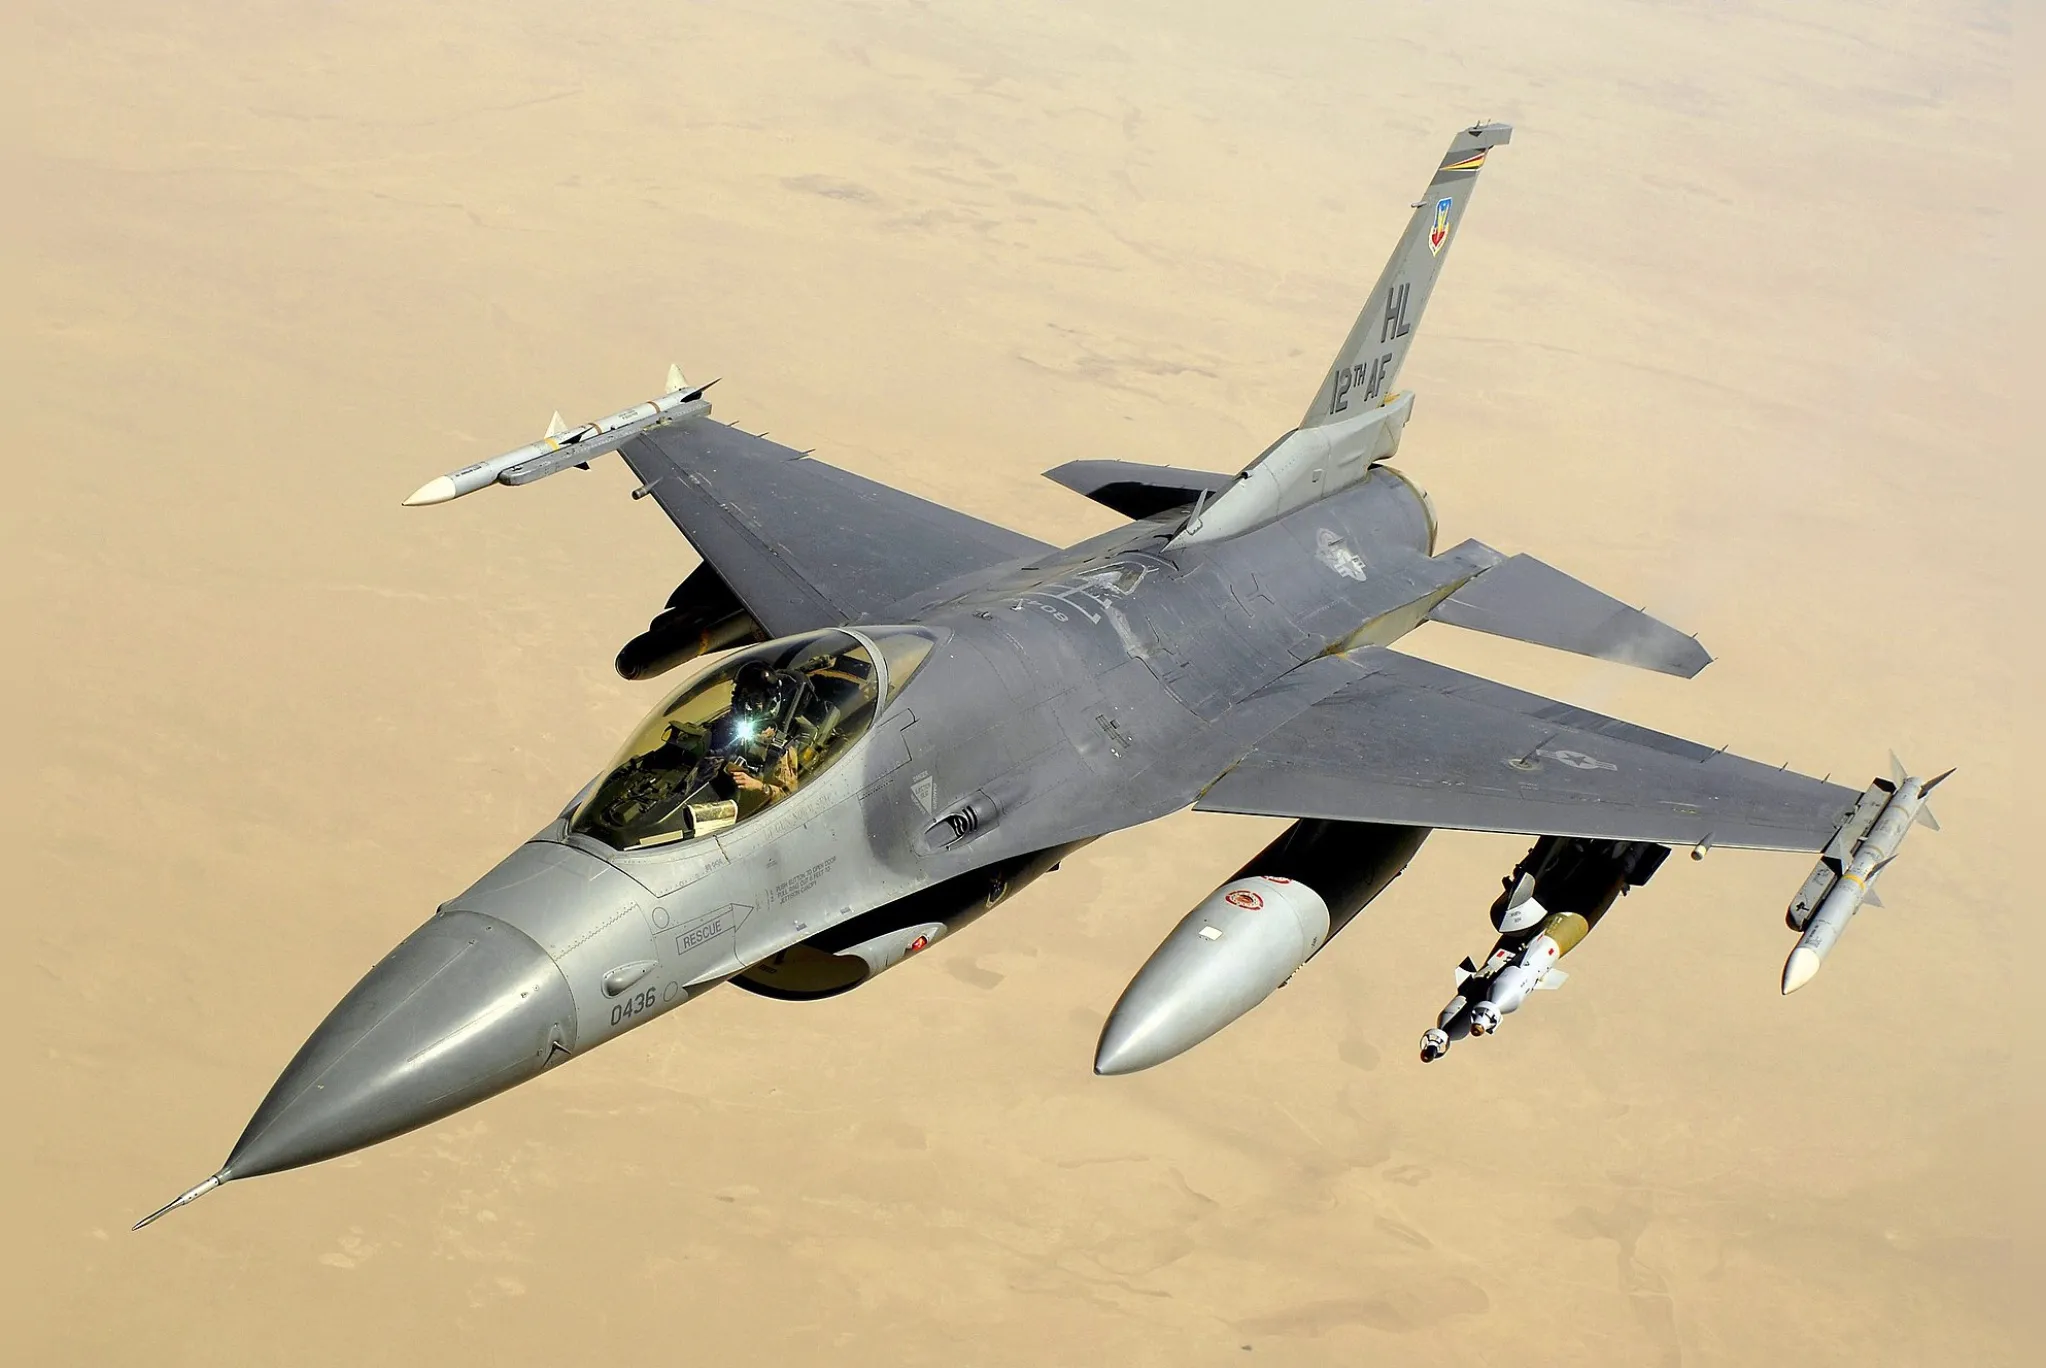 "Вопрос политики": В Киеве обвинили США в затягивании обучения украинцев пилотированию F-16
